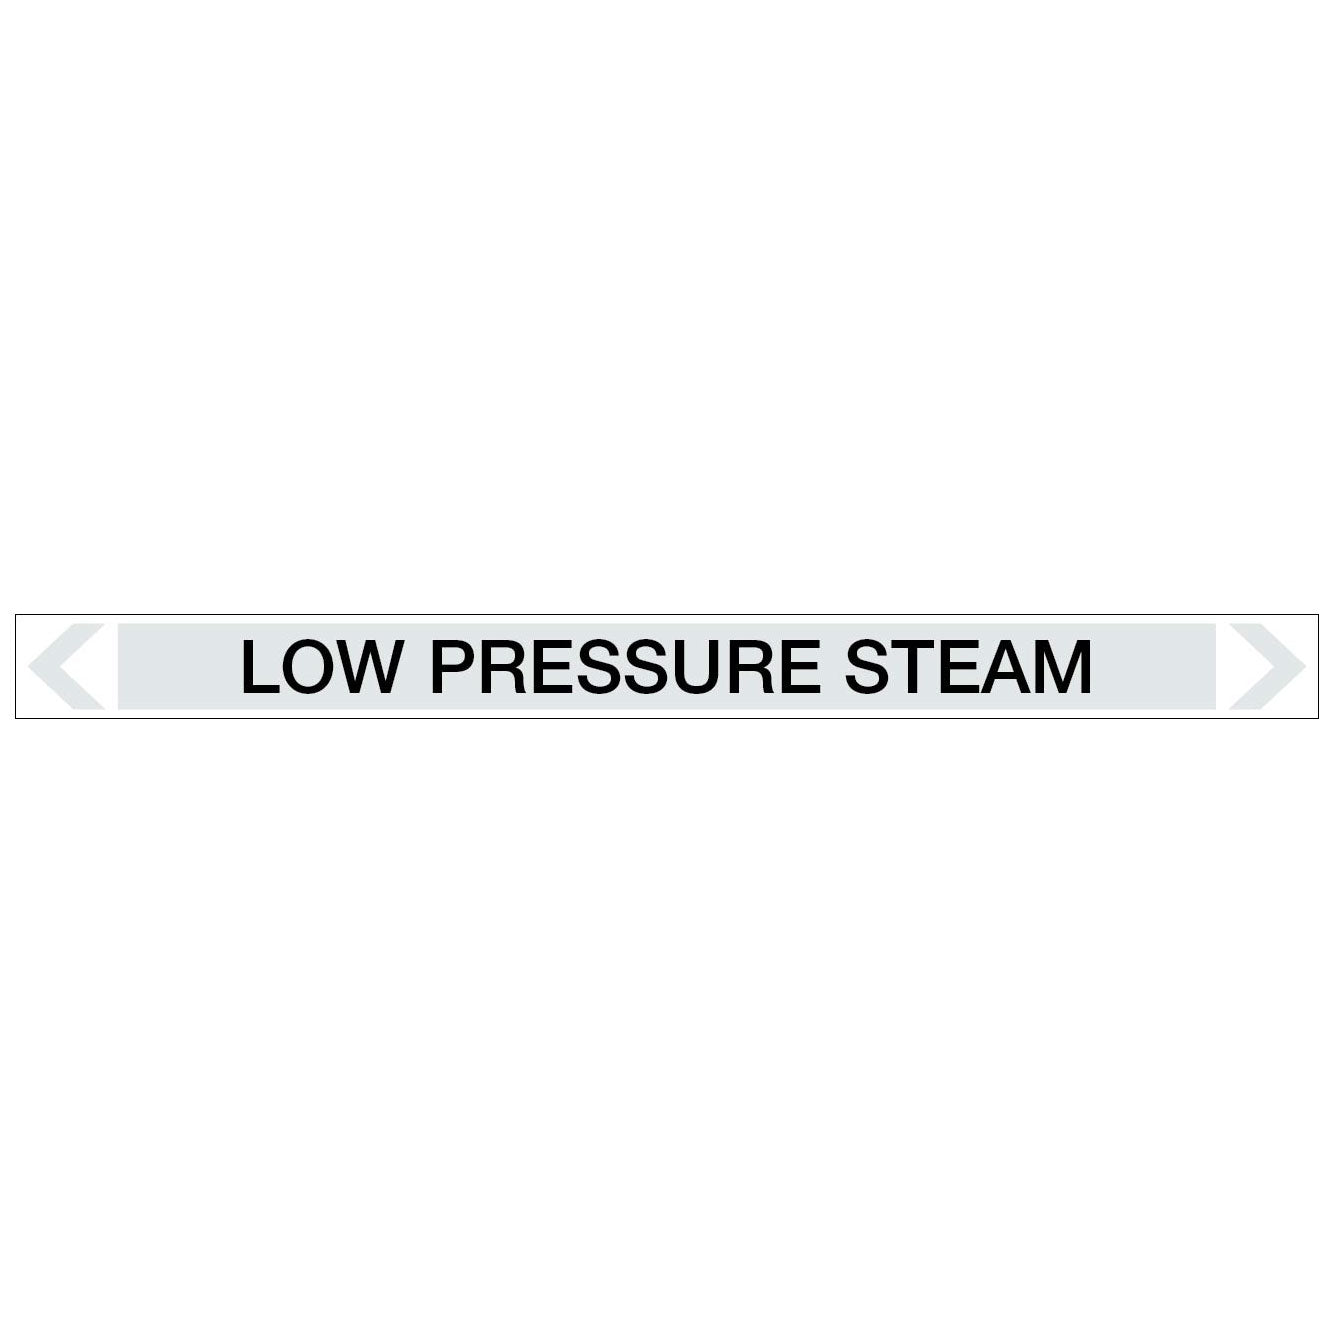 Steam - Low Pressure Steam - Pipe Marker Sticker